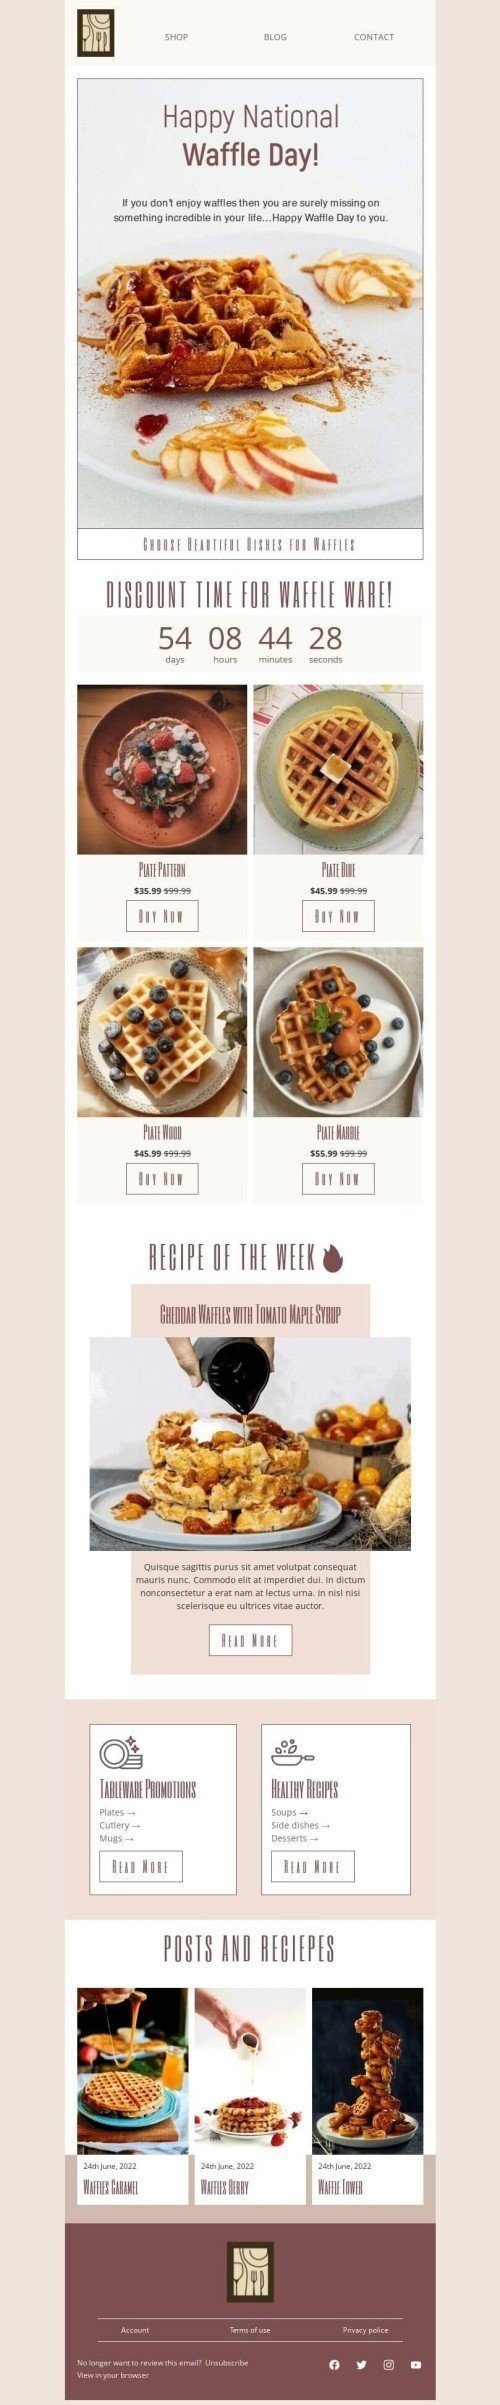 Plantilla de correo electrónico «Elige hermosos platos para gofres» de Día Nacional del Waffle para la industria de Muebles, interior y bricolaje Vista de móvil